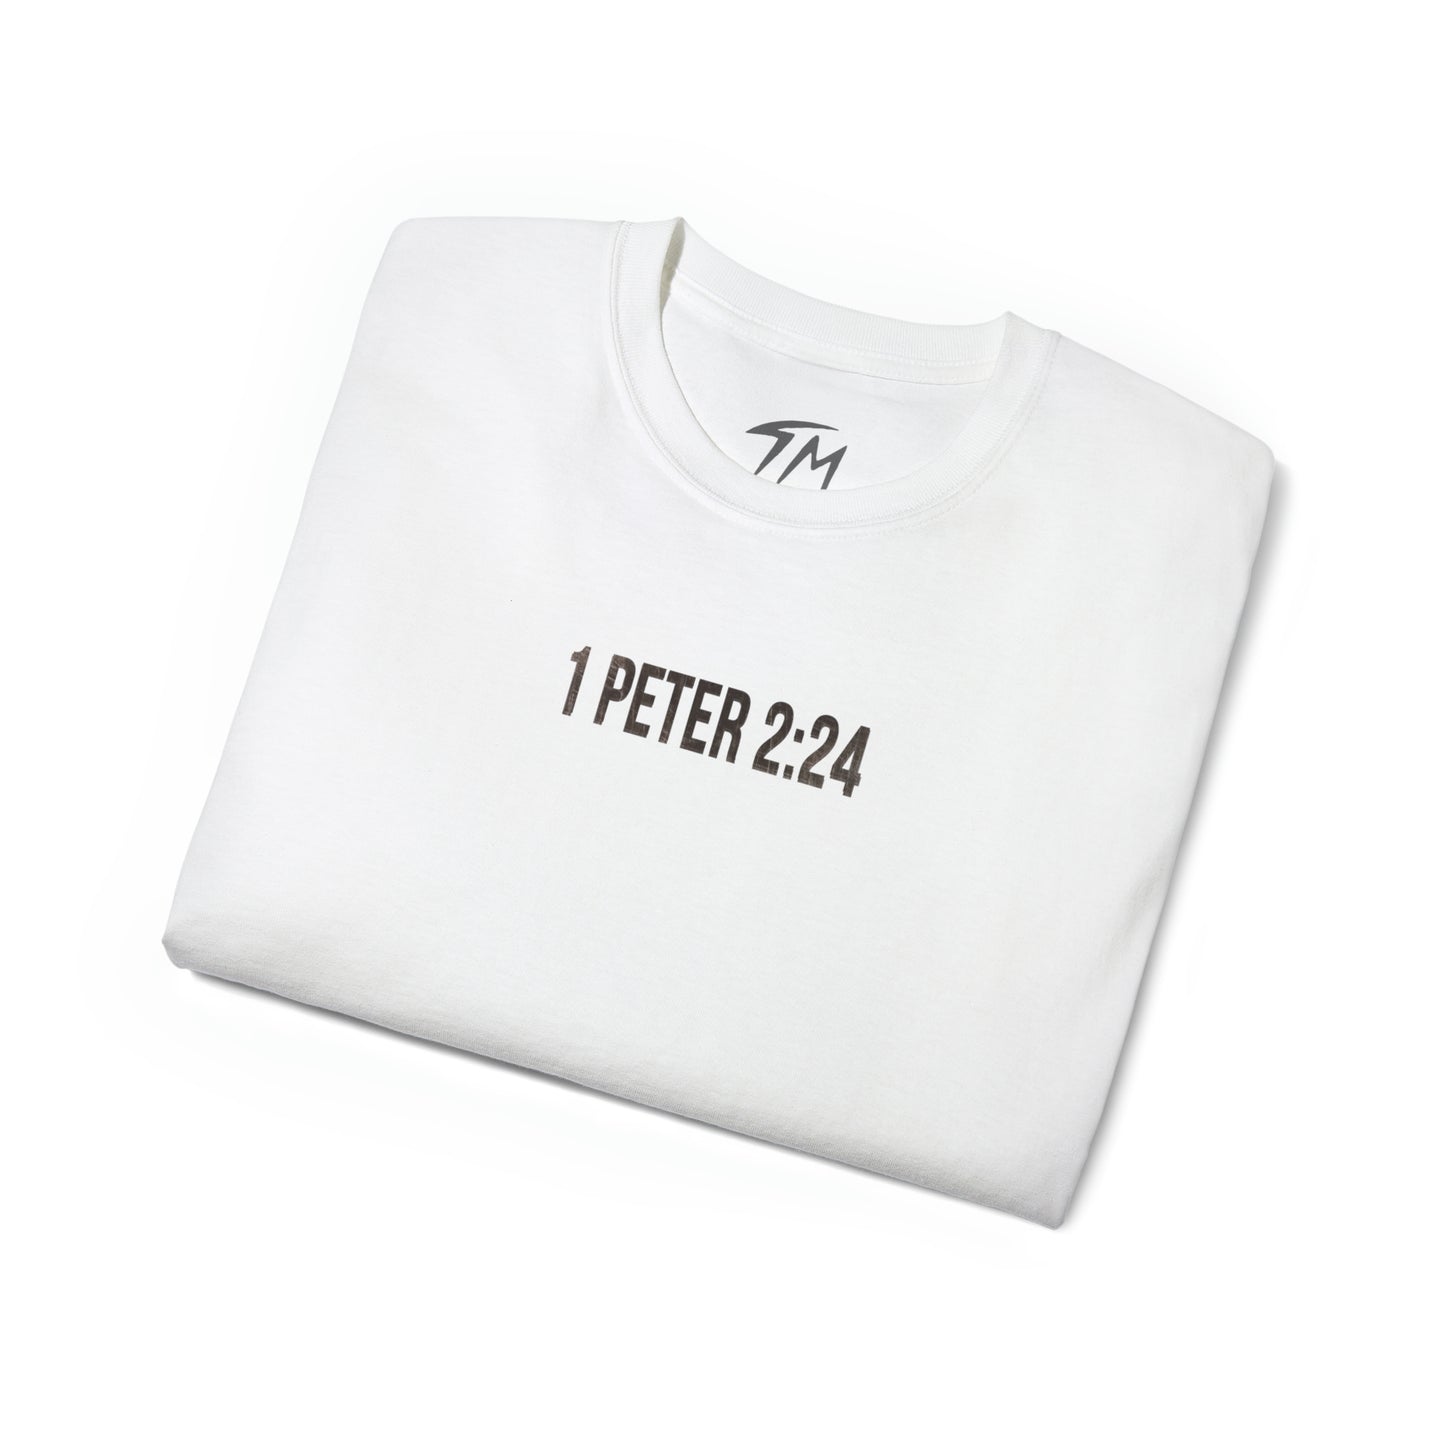 1 PETER 2:24 - T Shirt